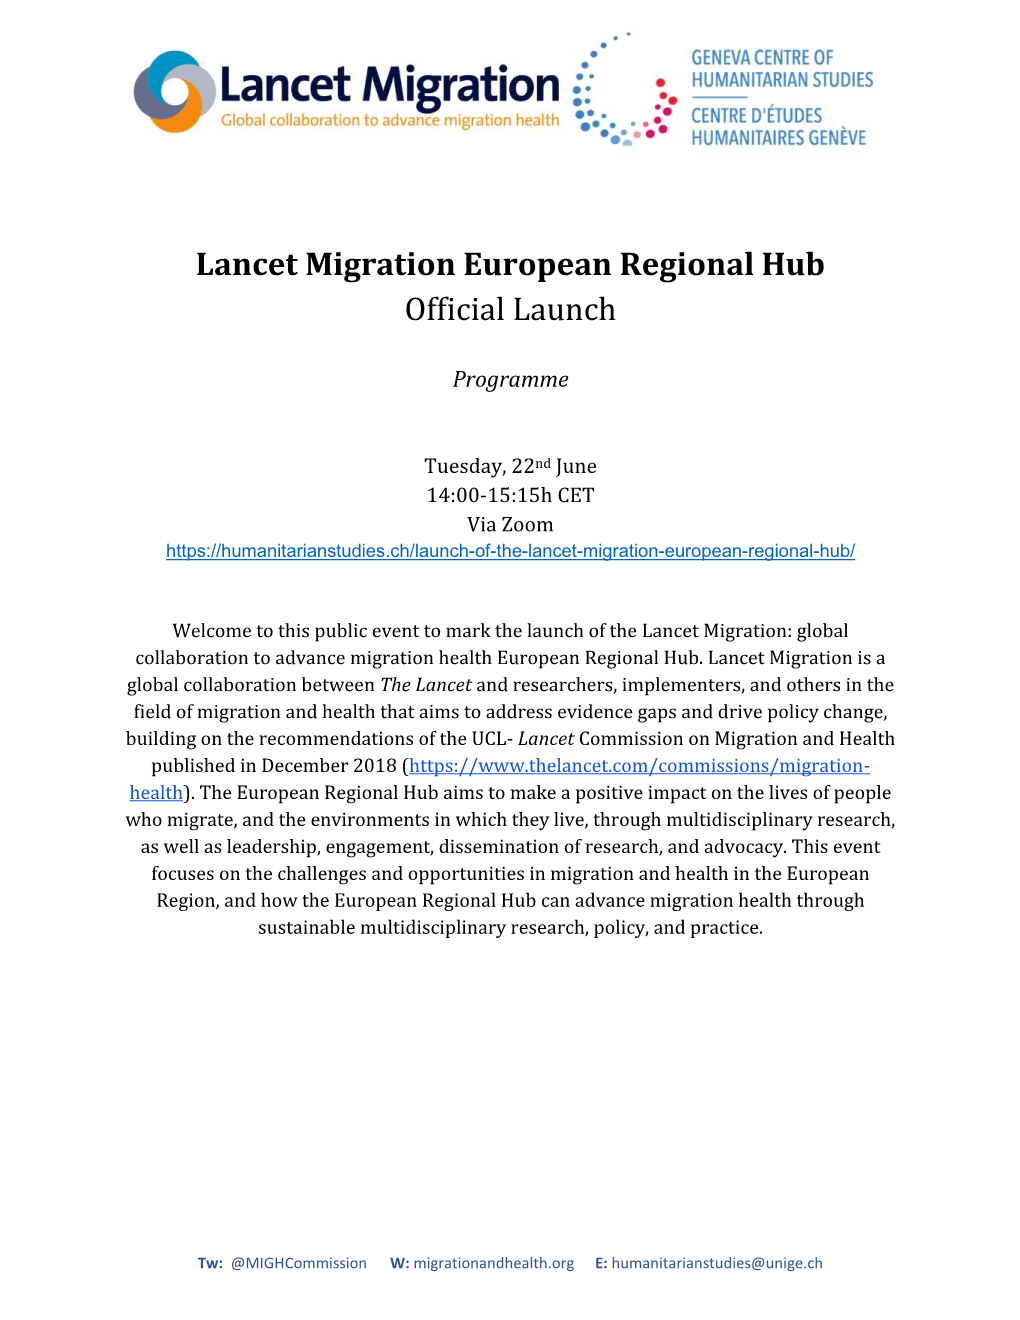 Lancet Migration European Regional Hub Official Launch